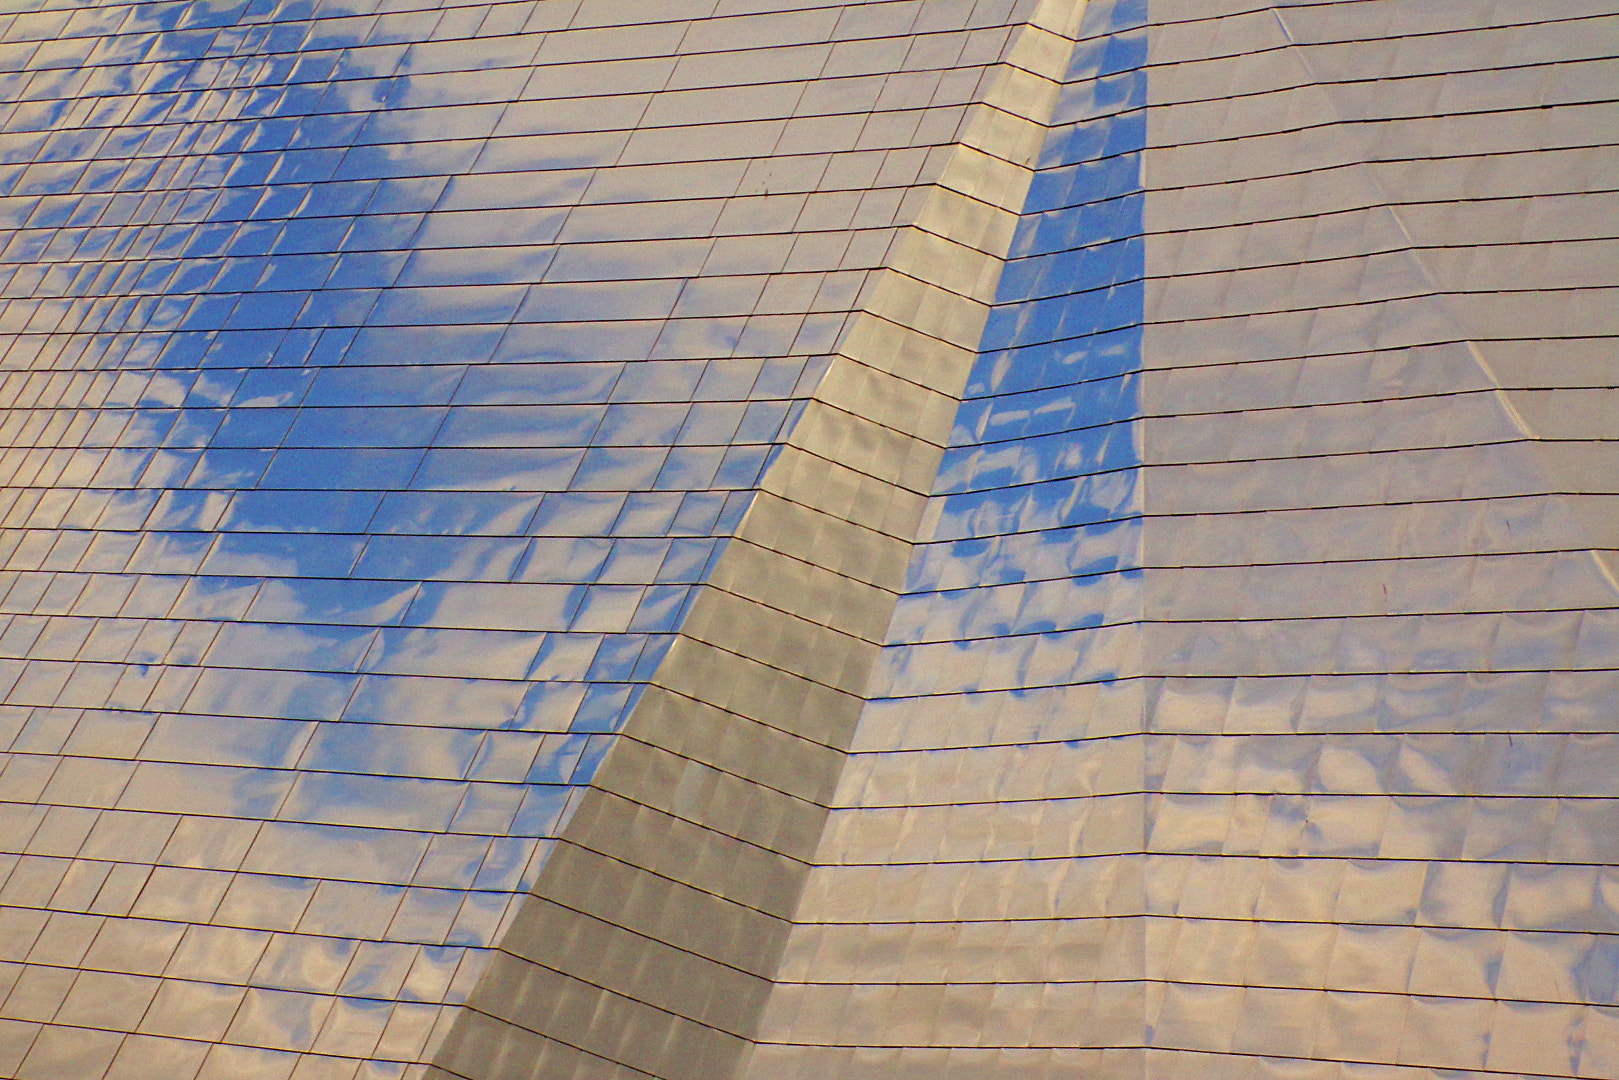 JK KODAK PIXPRO AZ422 sample photo. Blue skies and steel photography